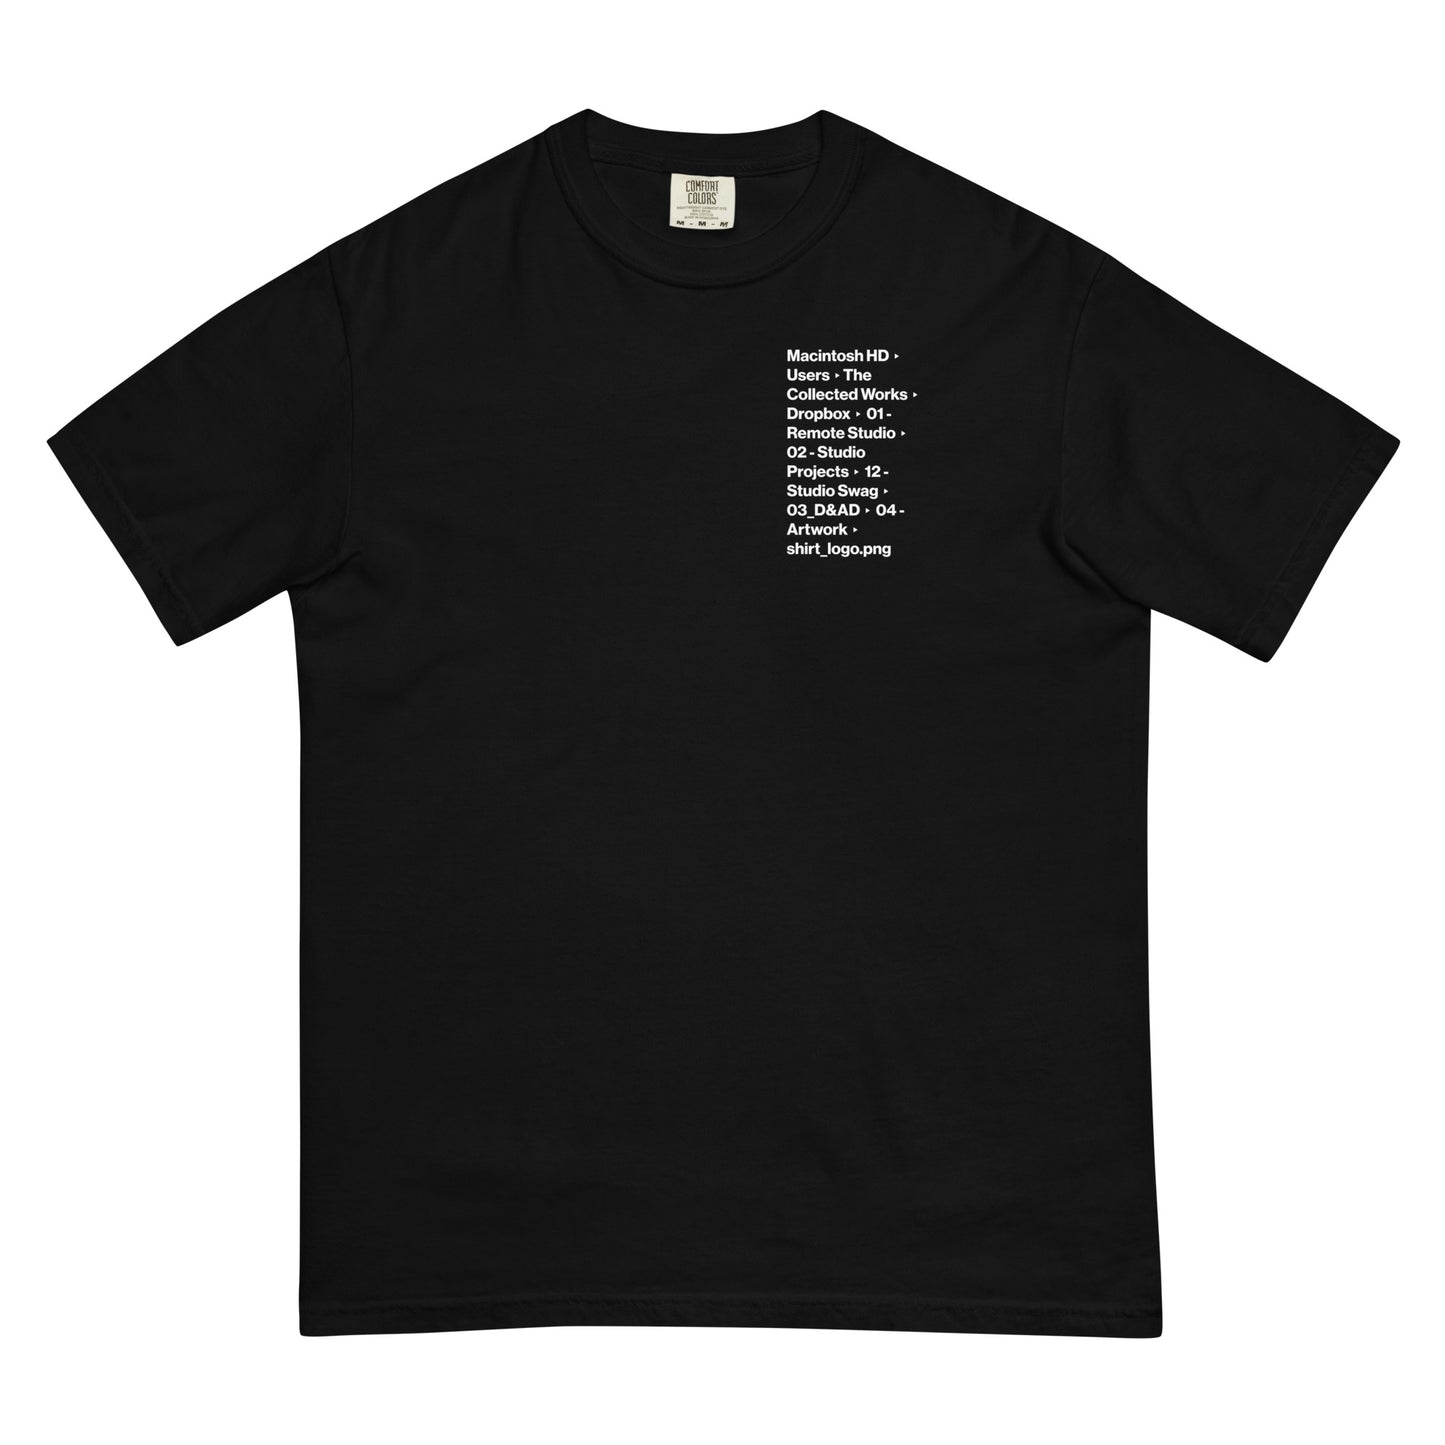 File_Path → T-Shirt